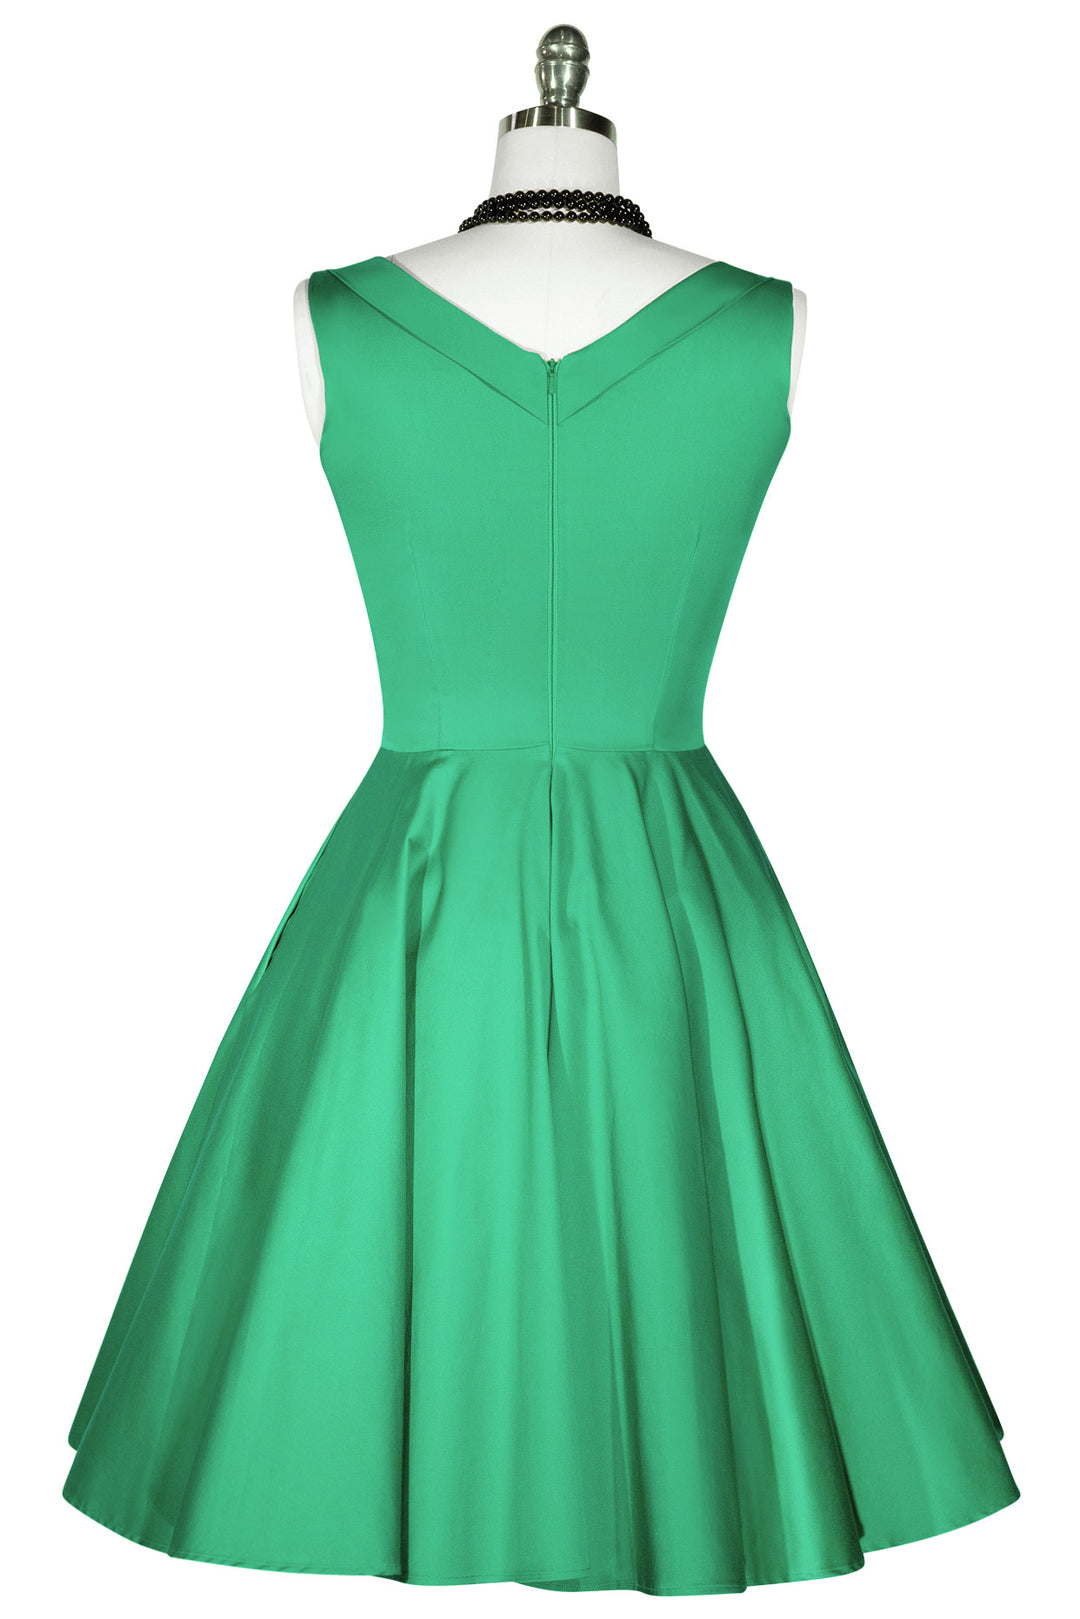 D'Amour Seaside Classic Dress (Green) - Kitten D'Amour